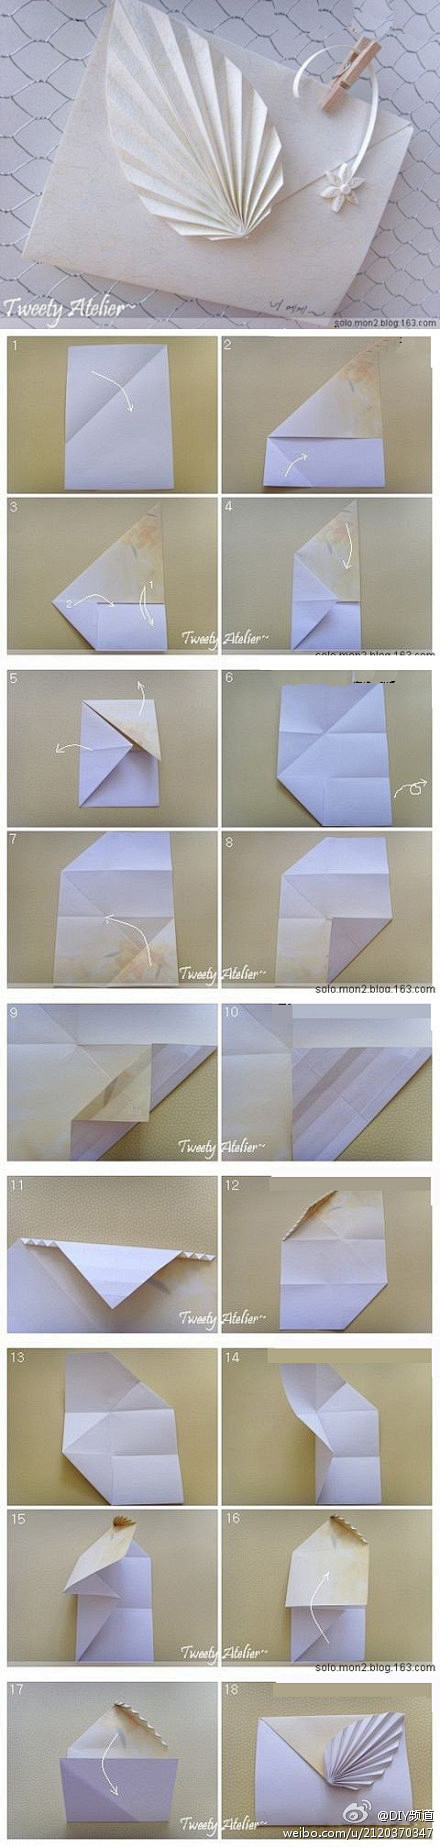 信纸折叠